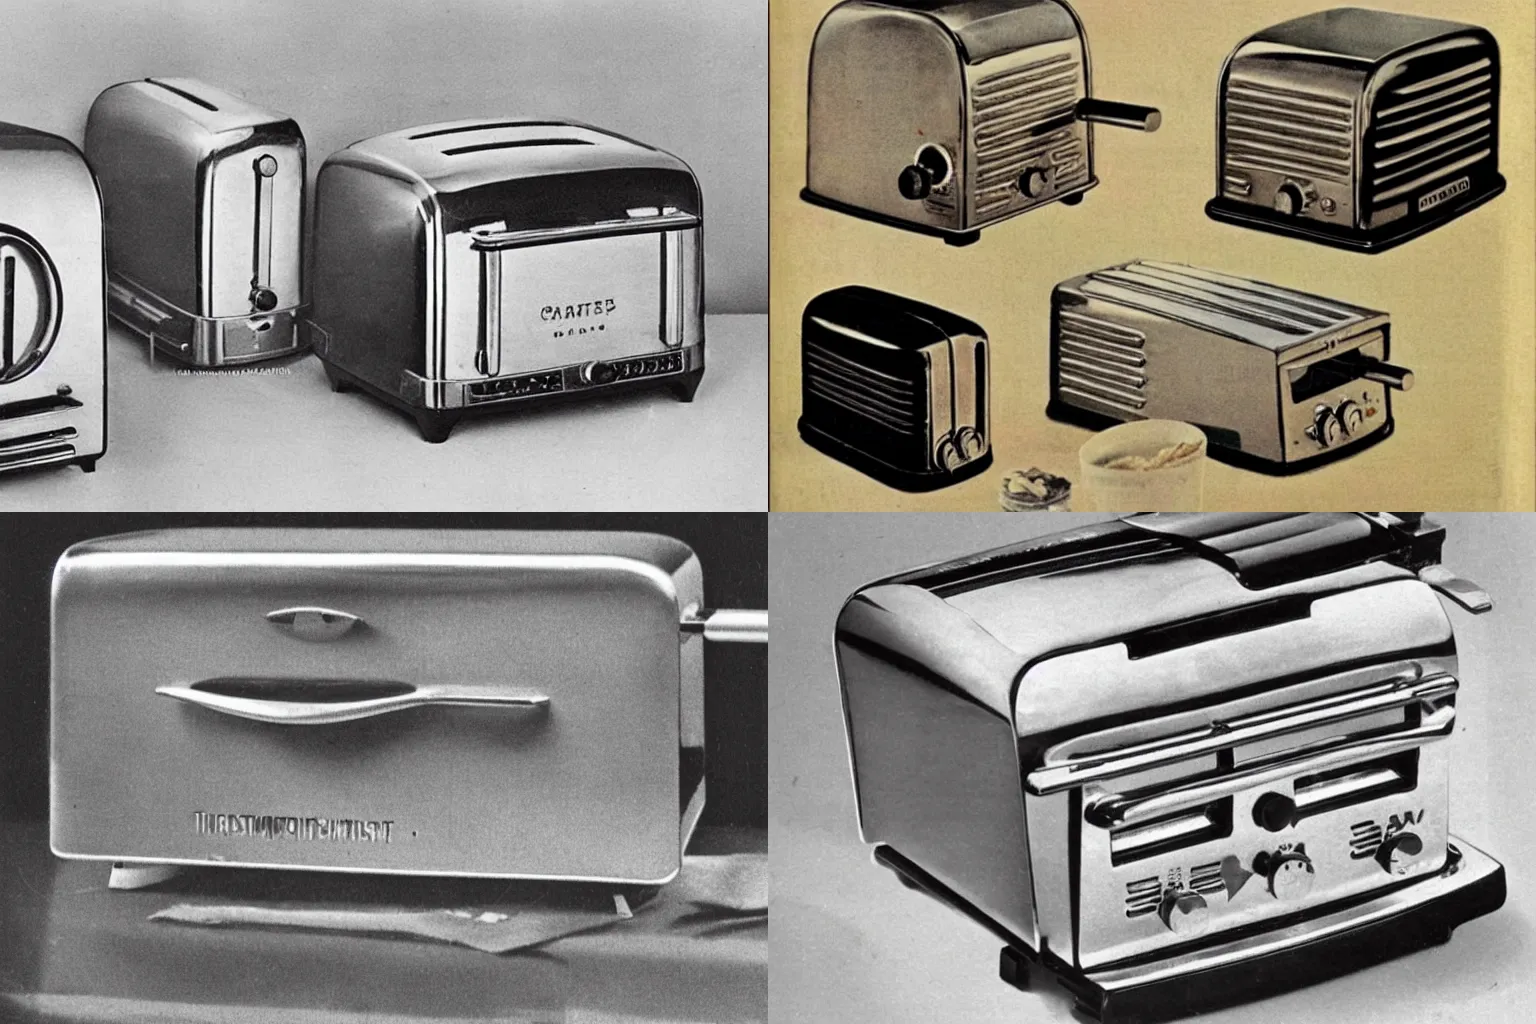 GE Vintage toaster 3D model